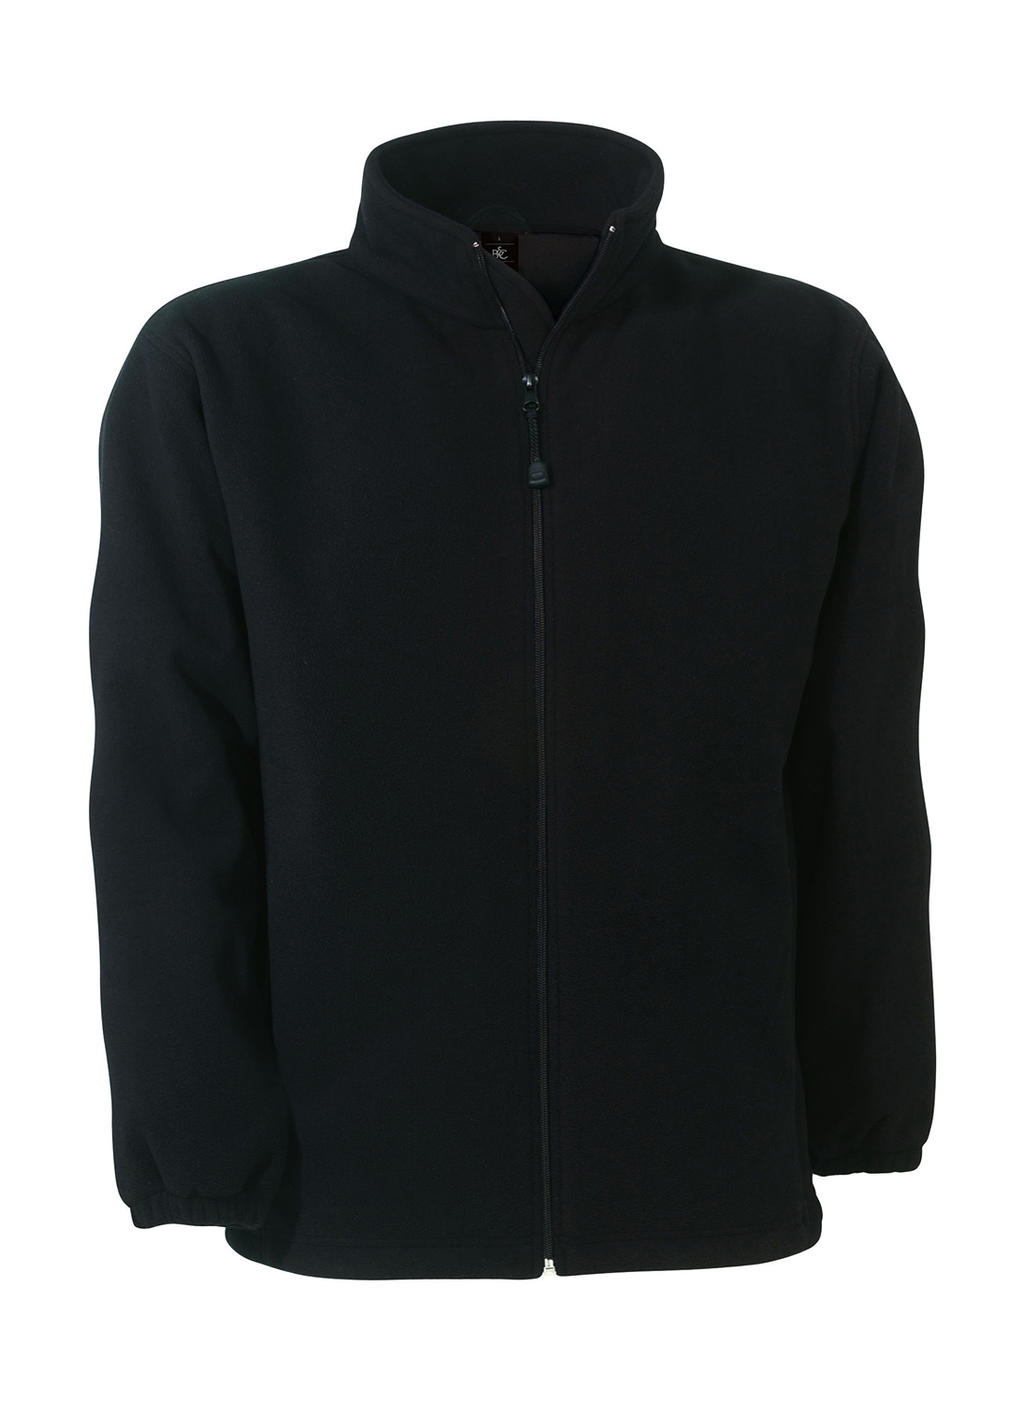 WindProtek Waterproof Fleece Jacket